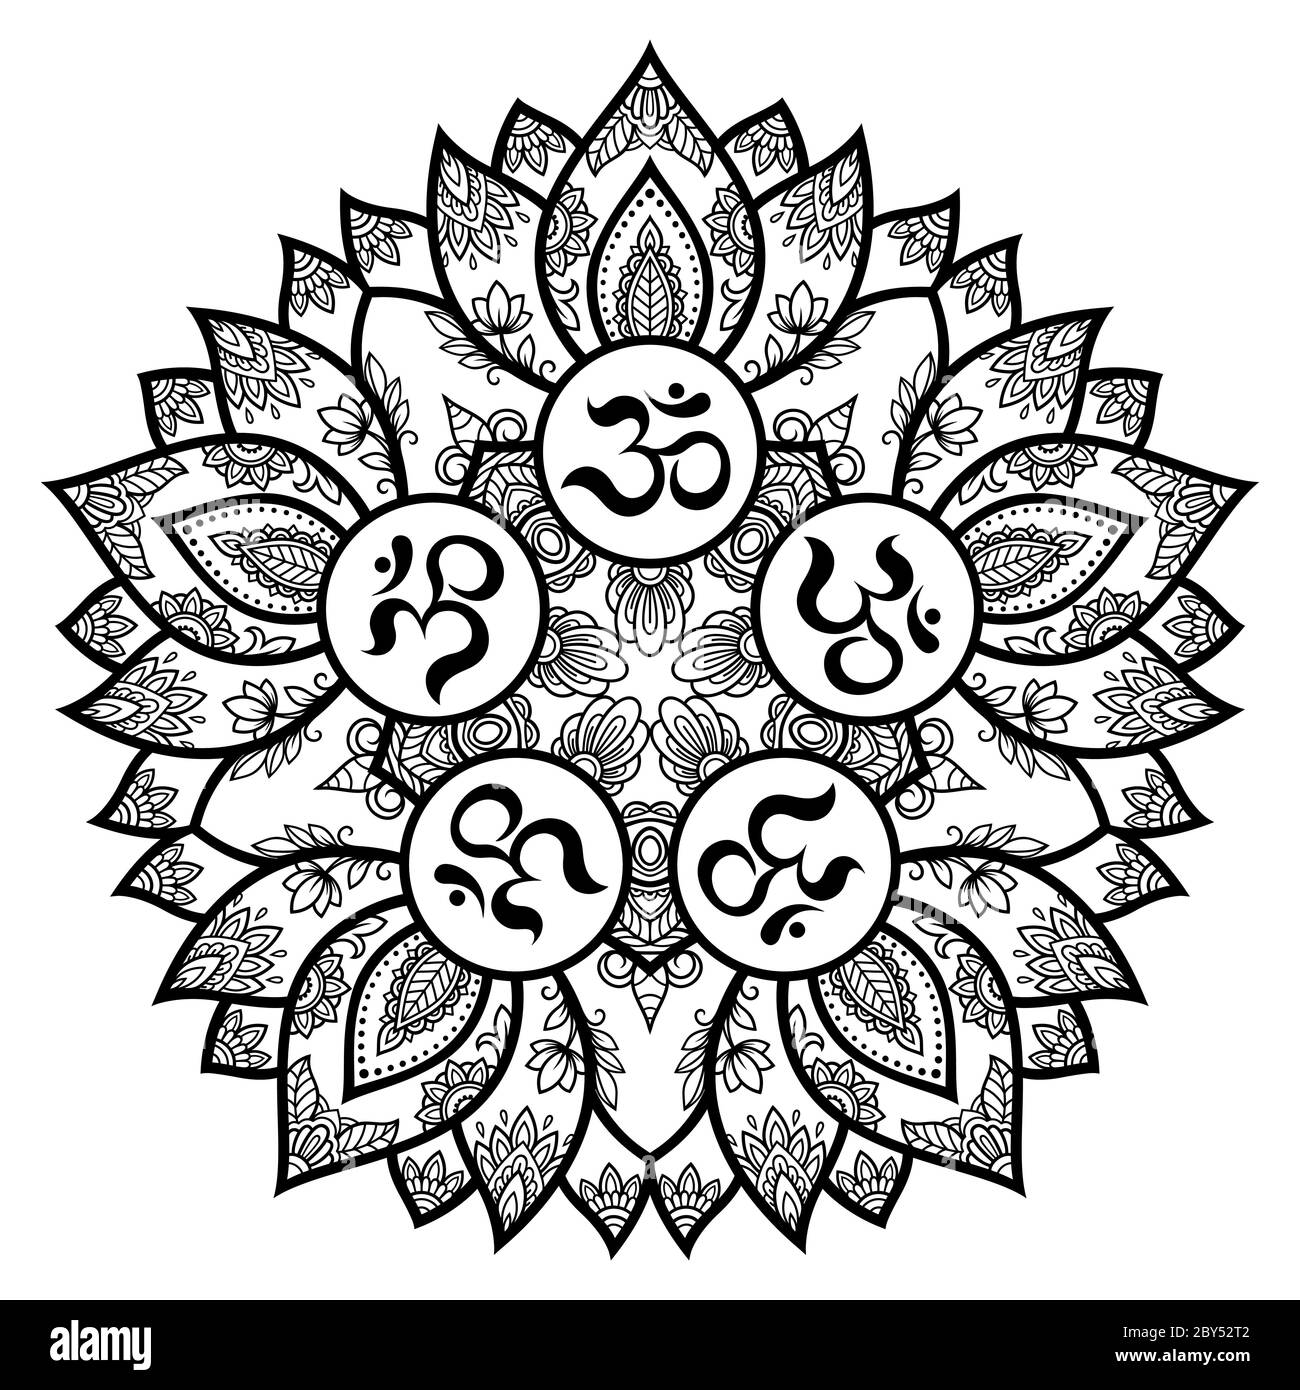 Motif circulaire sous forme de mandala pour avec fleur Henna, Mehndi, tatouage, décoration. Décoration décorative de style oriental avec mantra hindou ancien Illustration de Vecteur